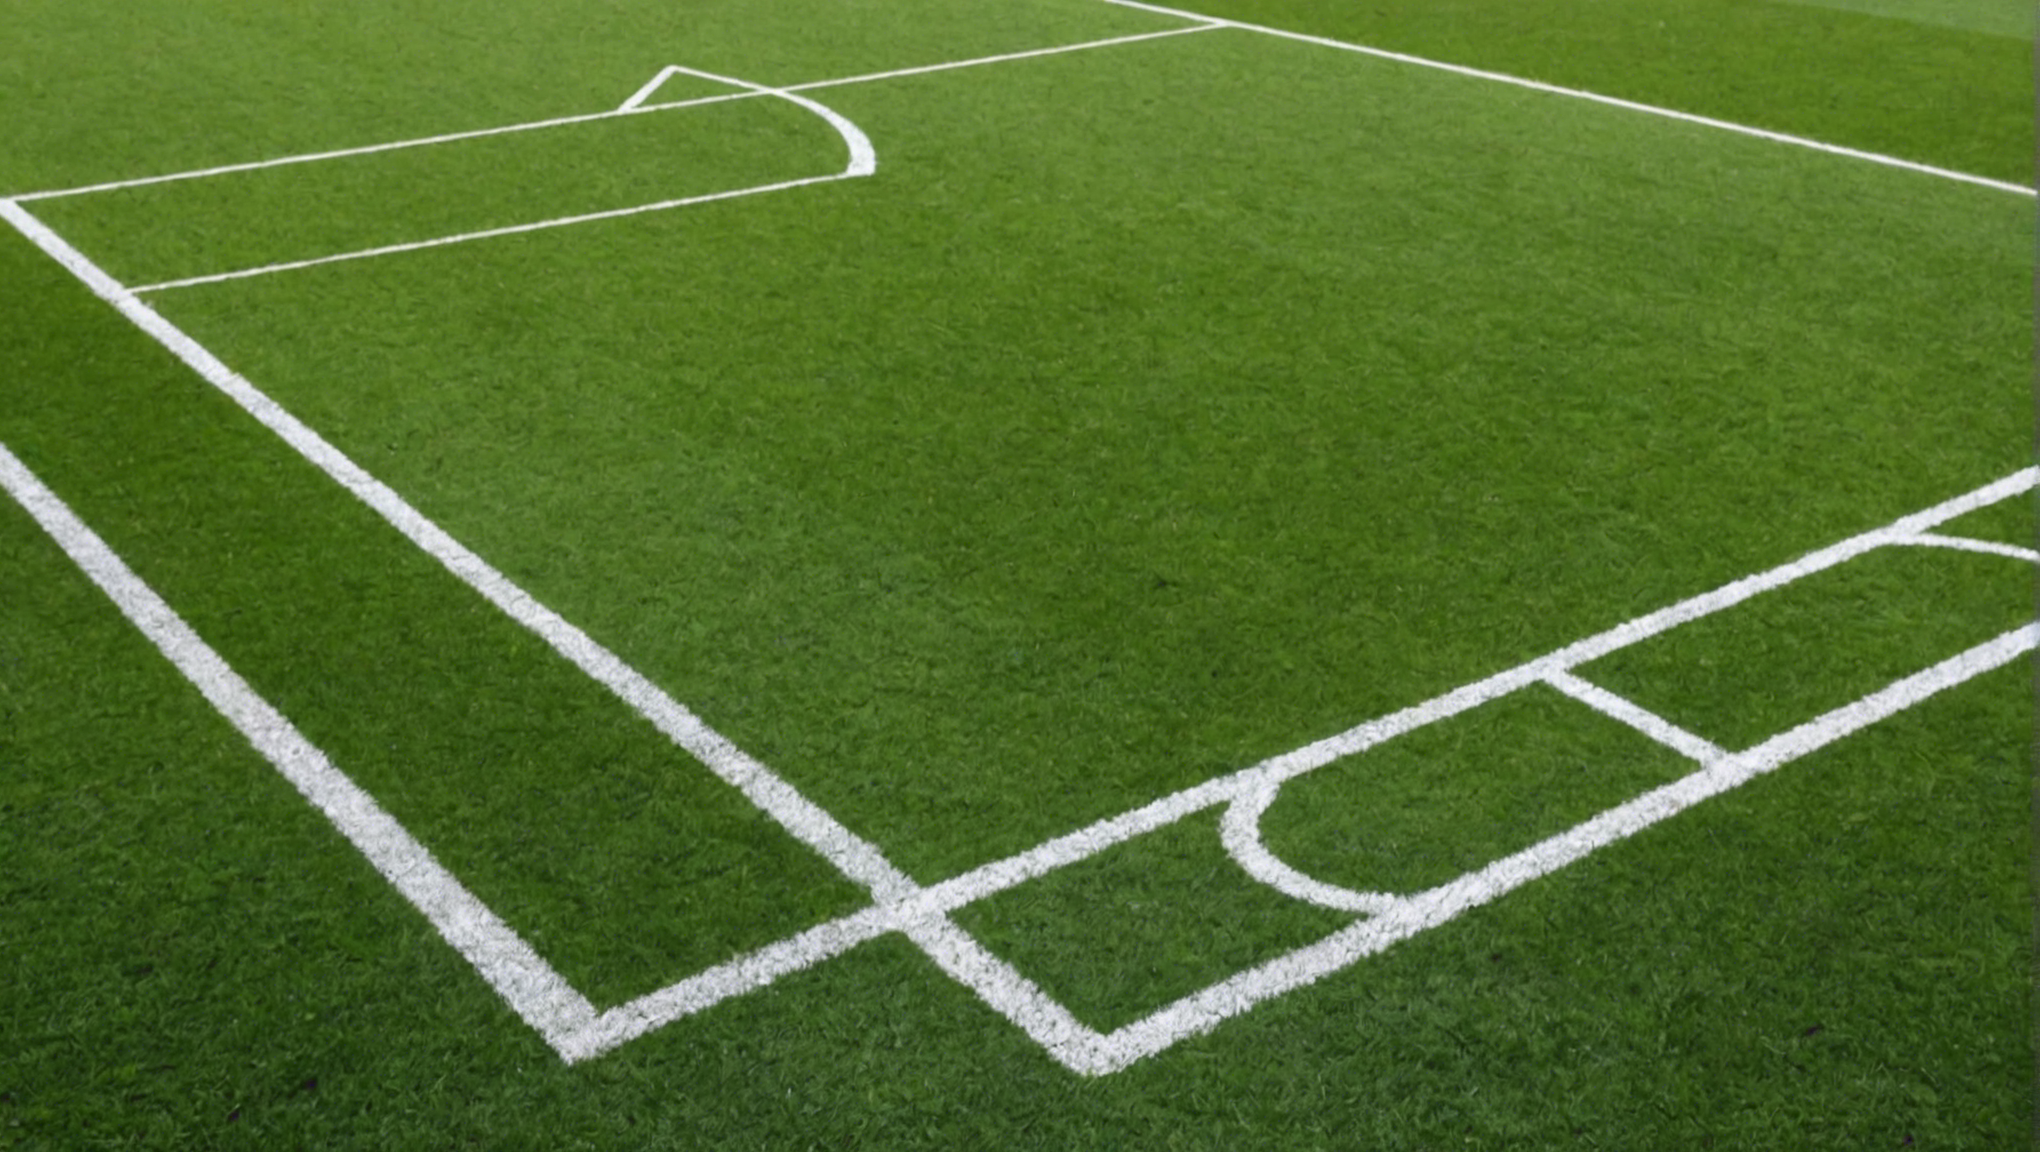 découvrez comment estimer le coût du terrassement d'un terrain de football grâce à nos conseils pratiques et à notre expertise en génie civil.